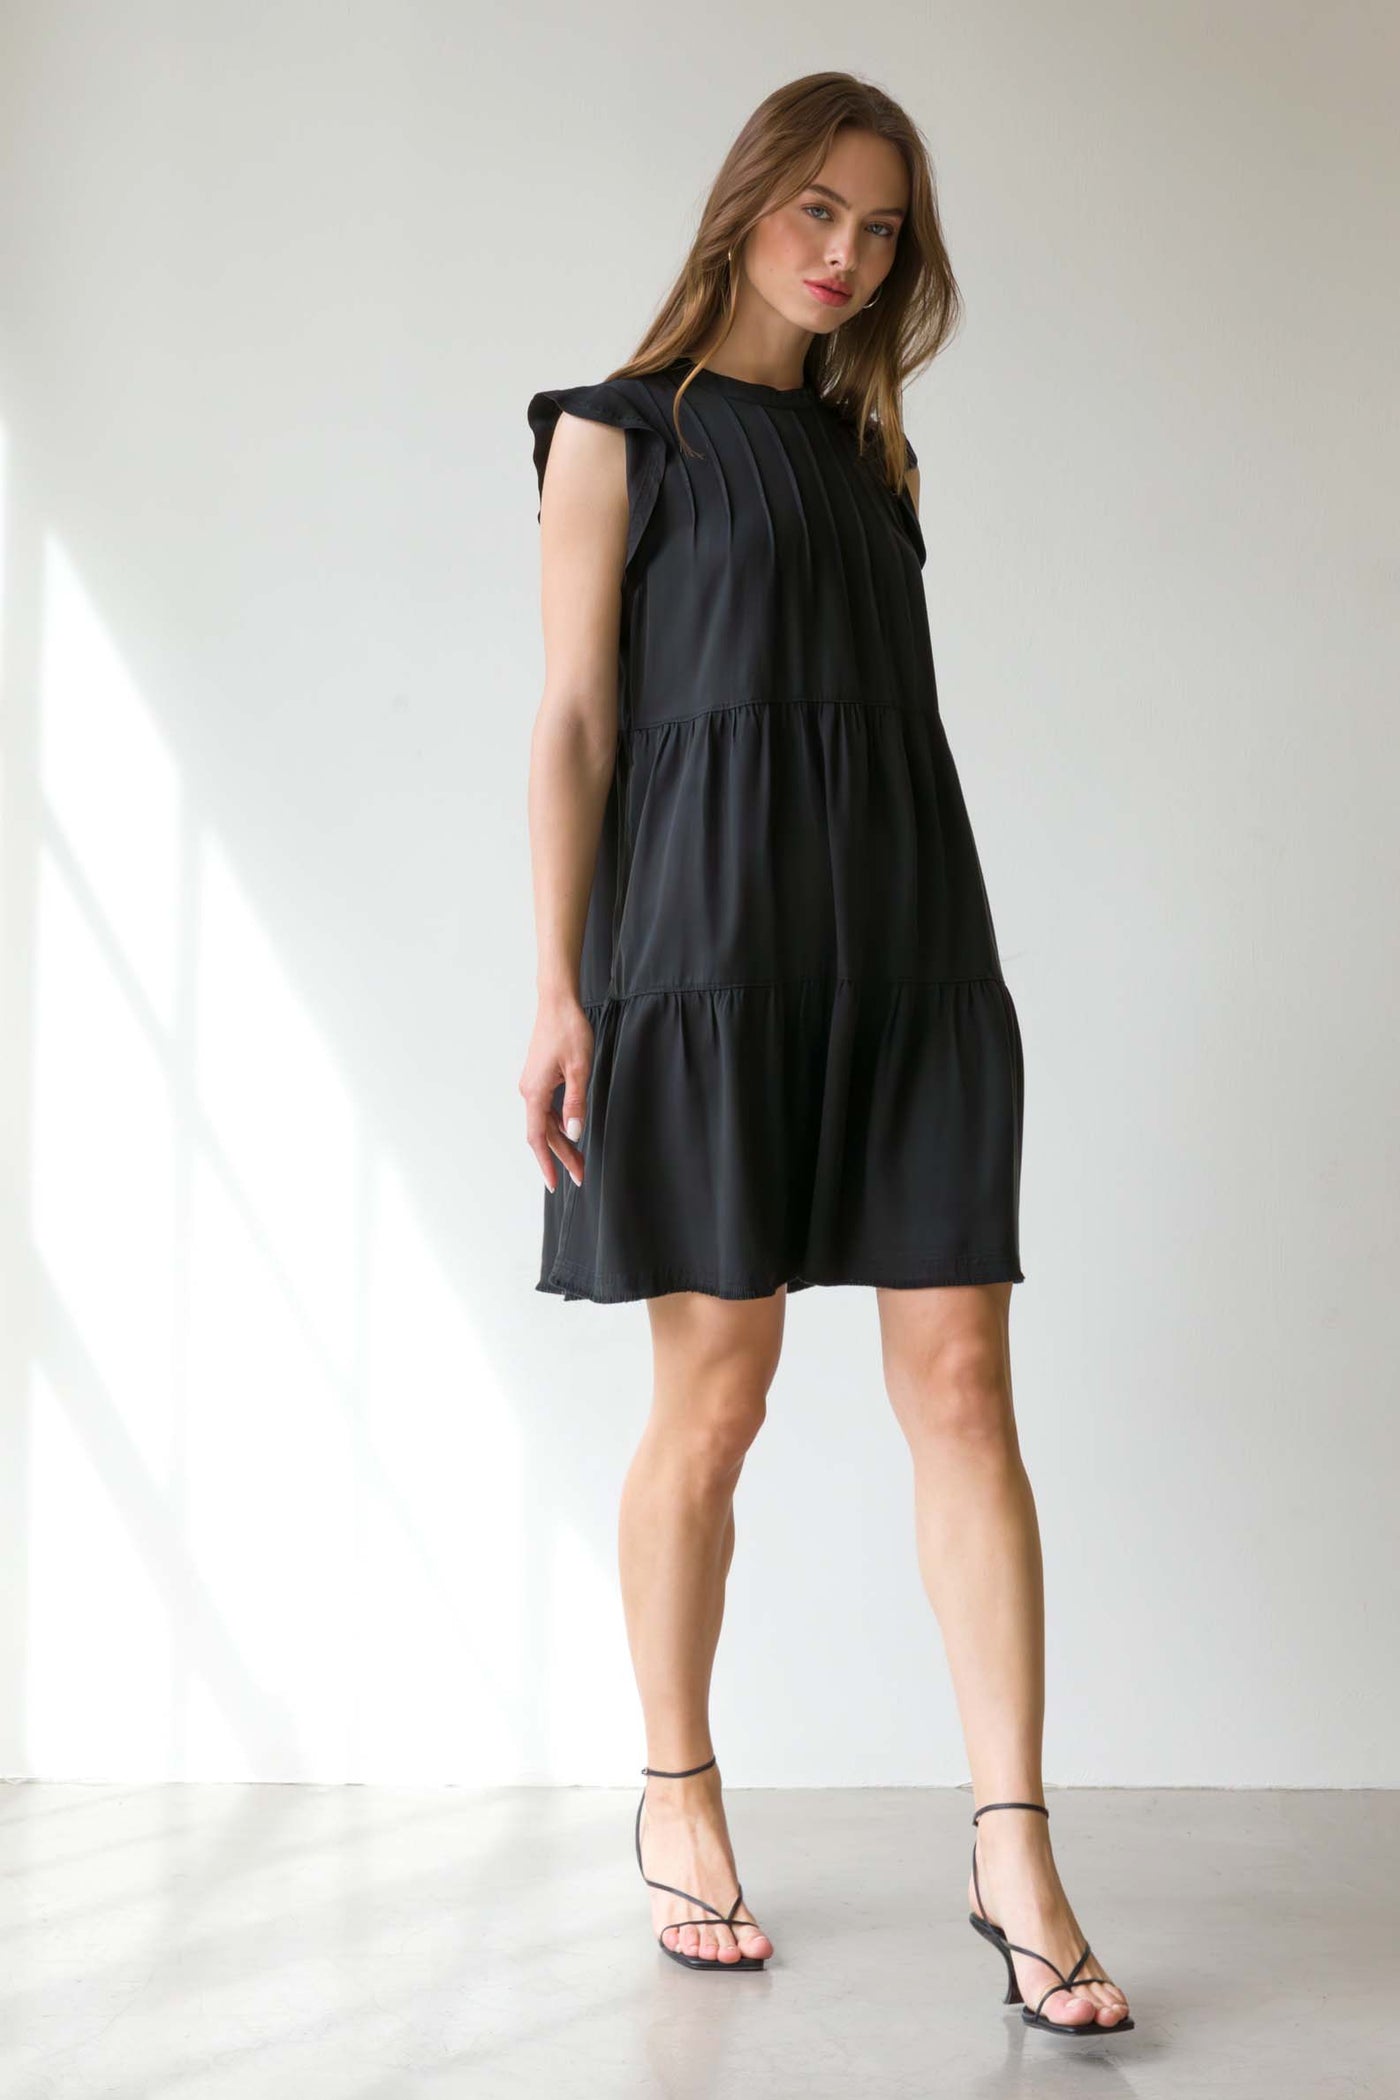 Shelly Black Dress - Dresses - Velvet Heart Clothing